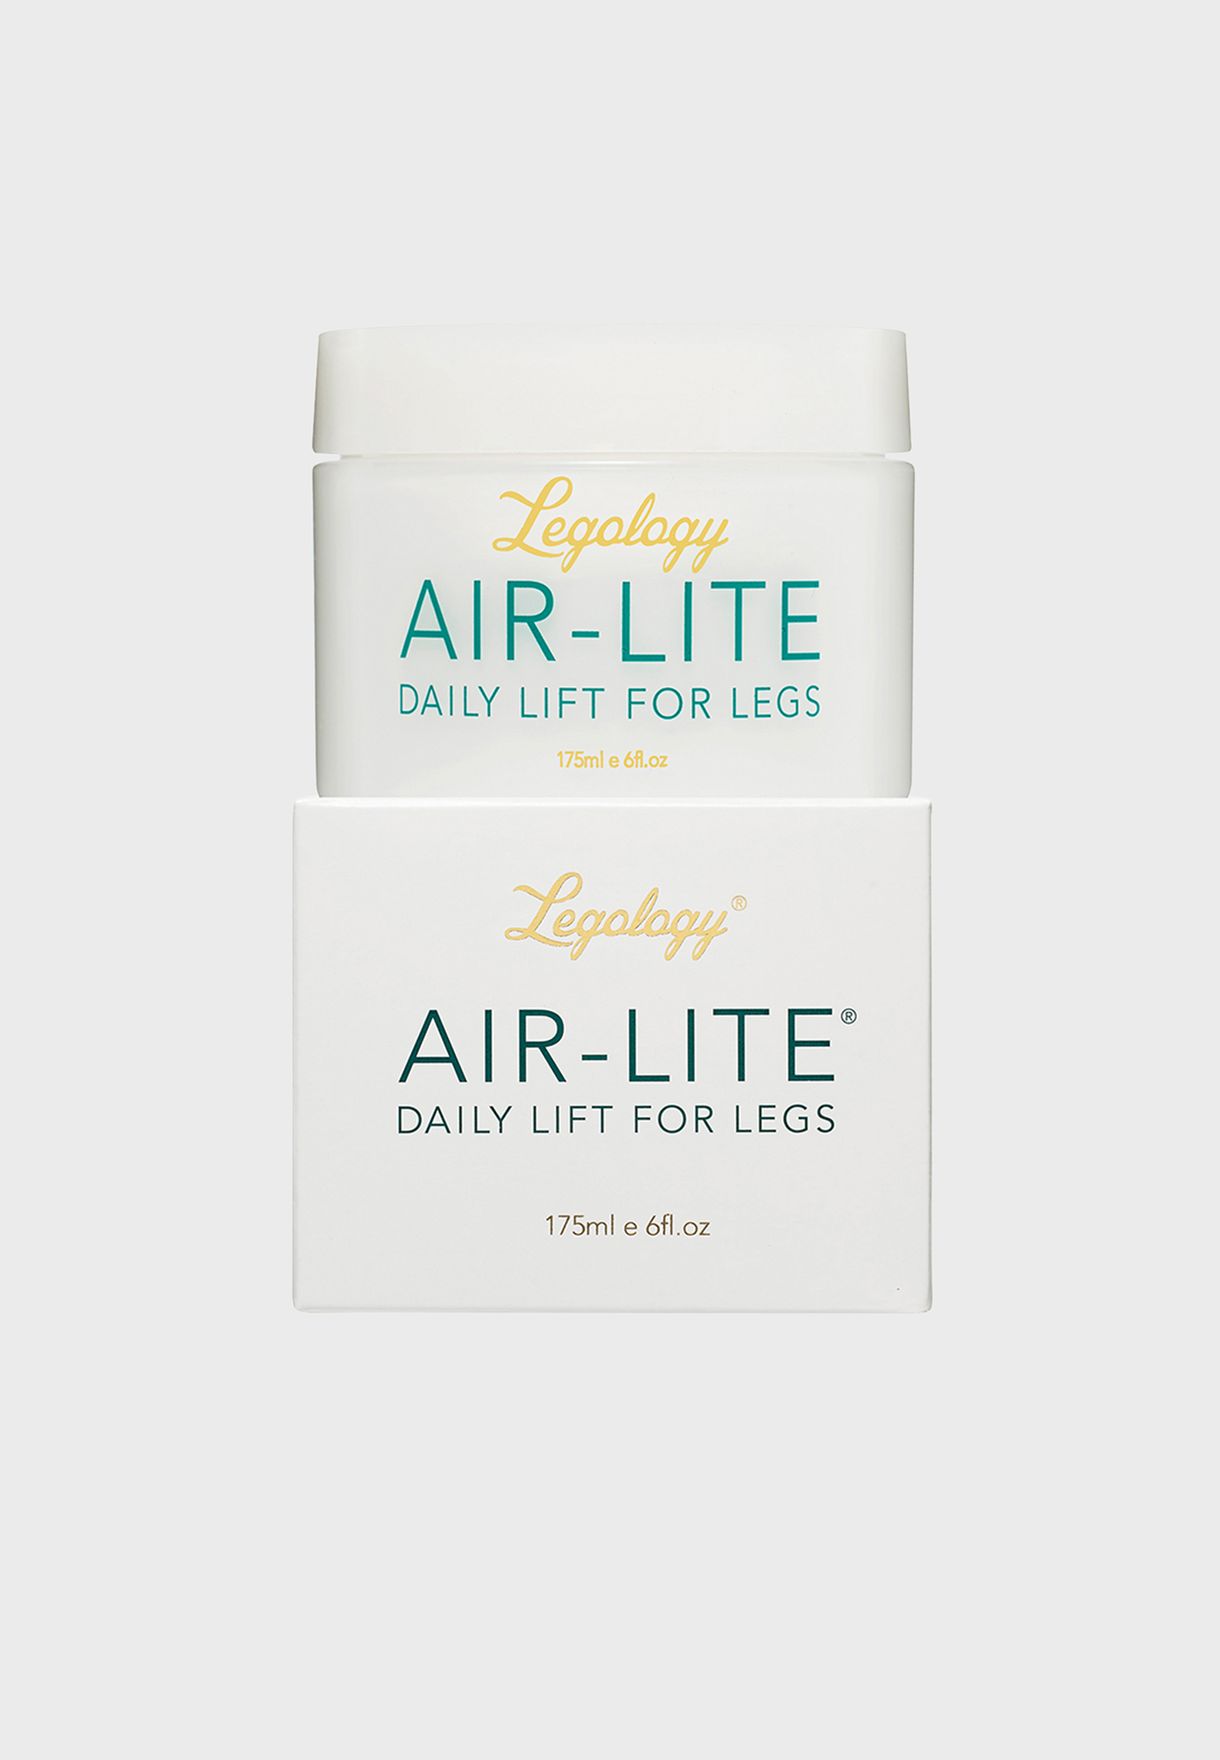 Air-Lite Daily Lift For Legs